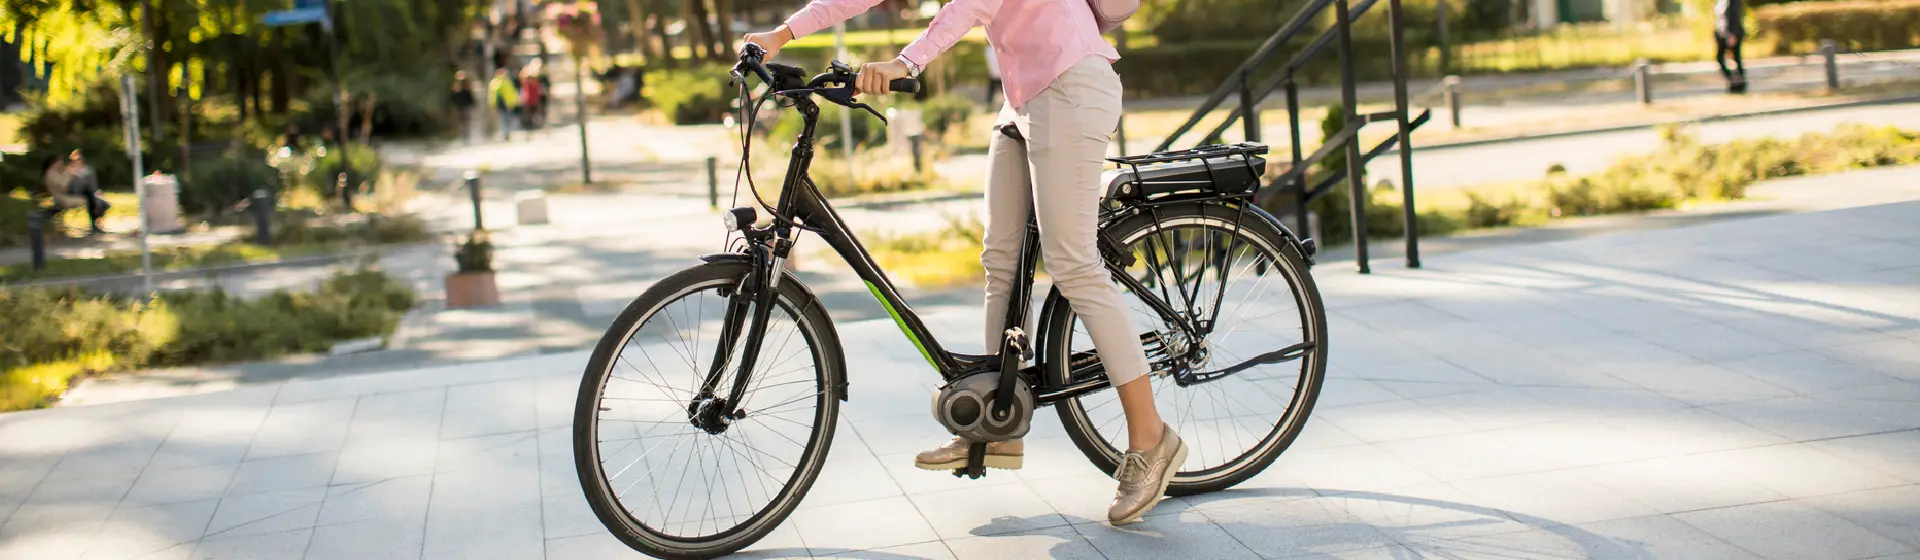 Bicicleta elétrica ou bicicleta motorizada: qual a diferença?